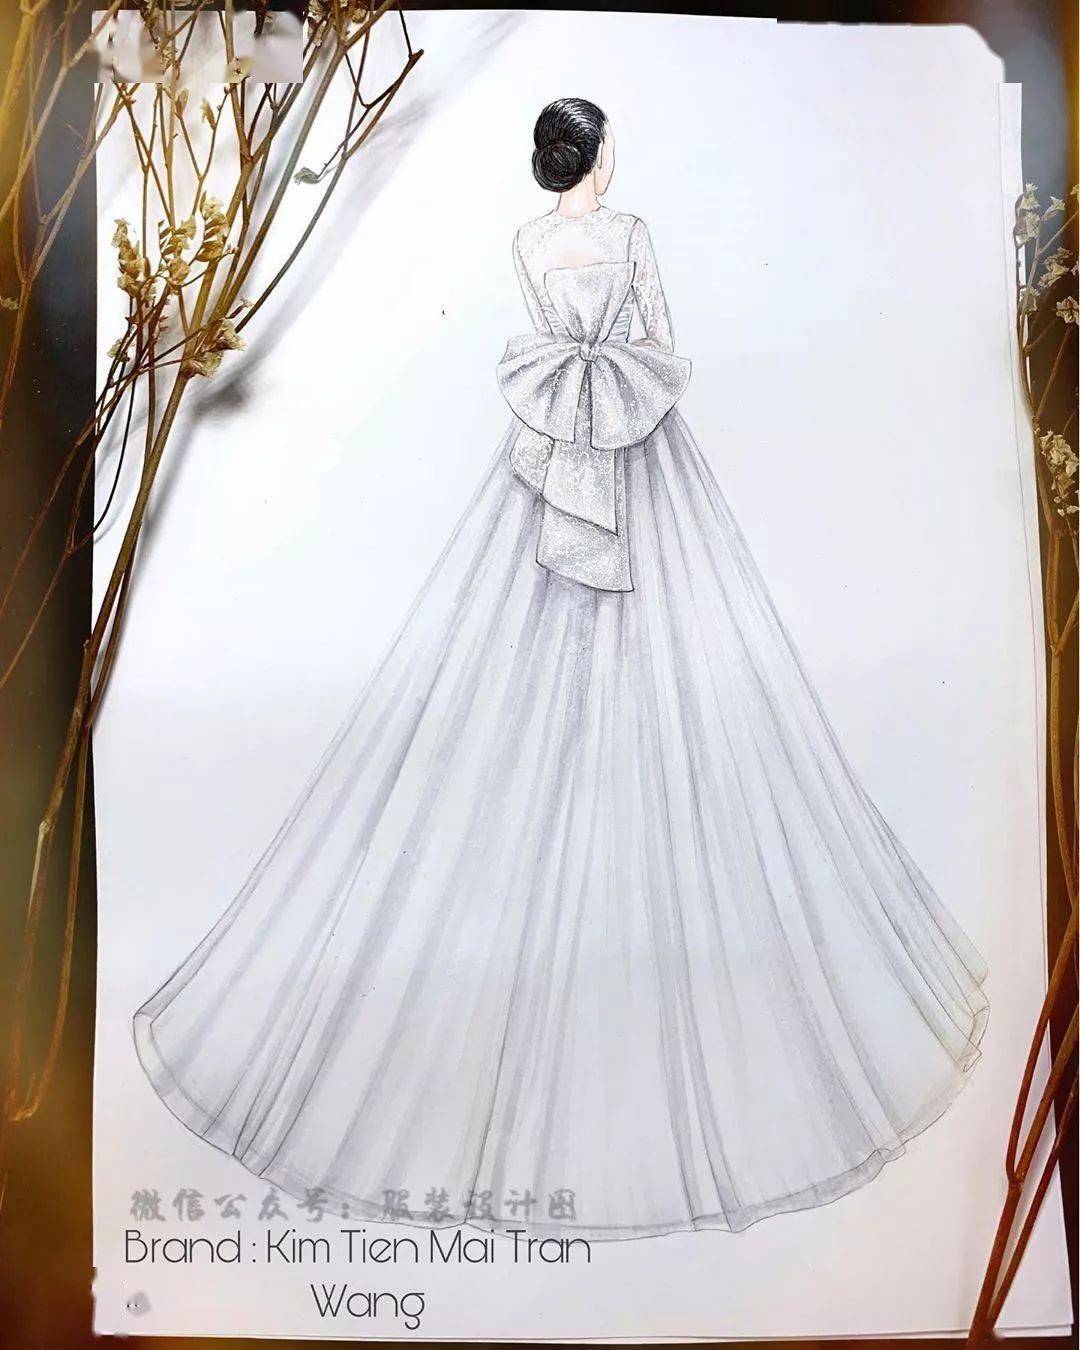 米兰婚纱手绘设计图_米兰晚礼服手绘设计图(3)